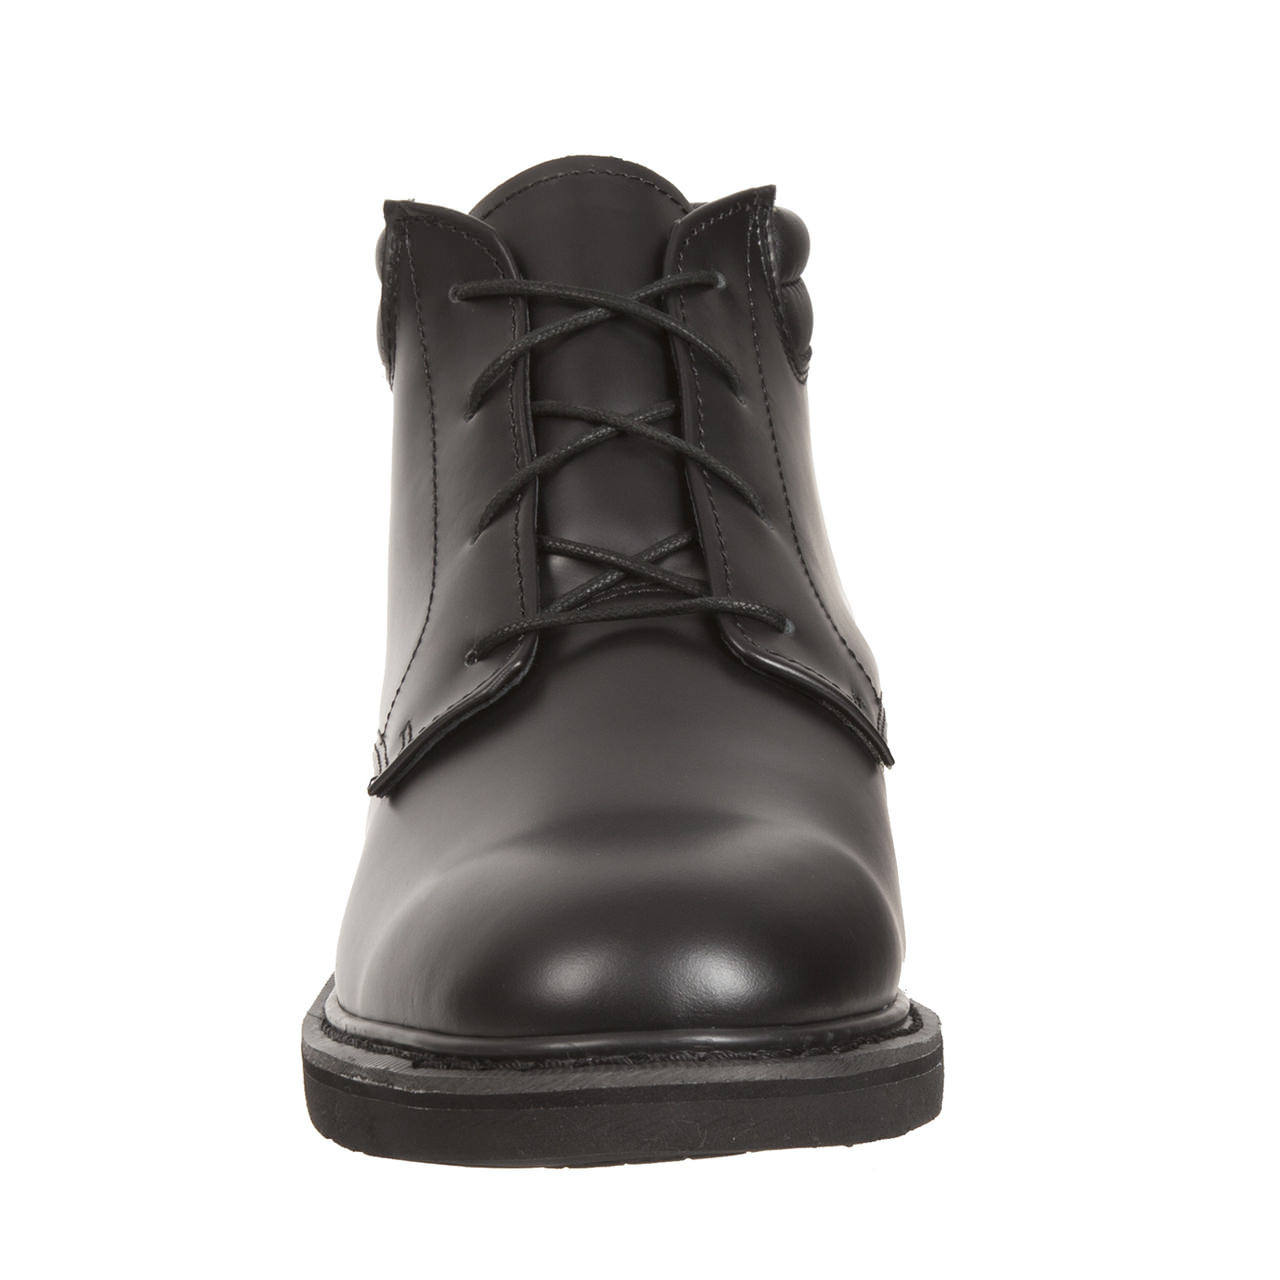 Rocky 501-8 Polishable Dress Leather Chukka Shoes BLACK